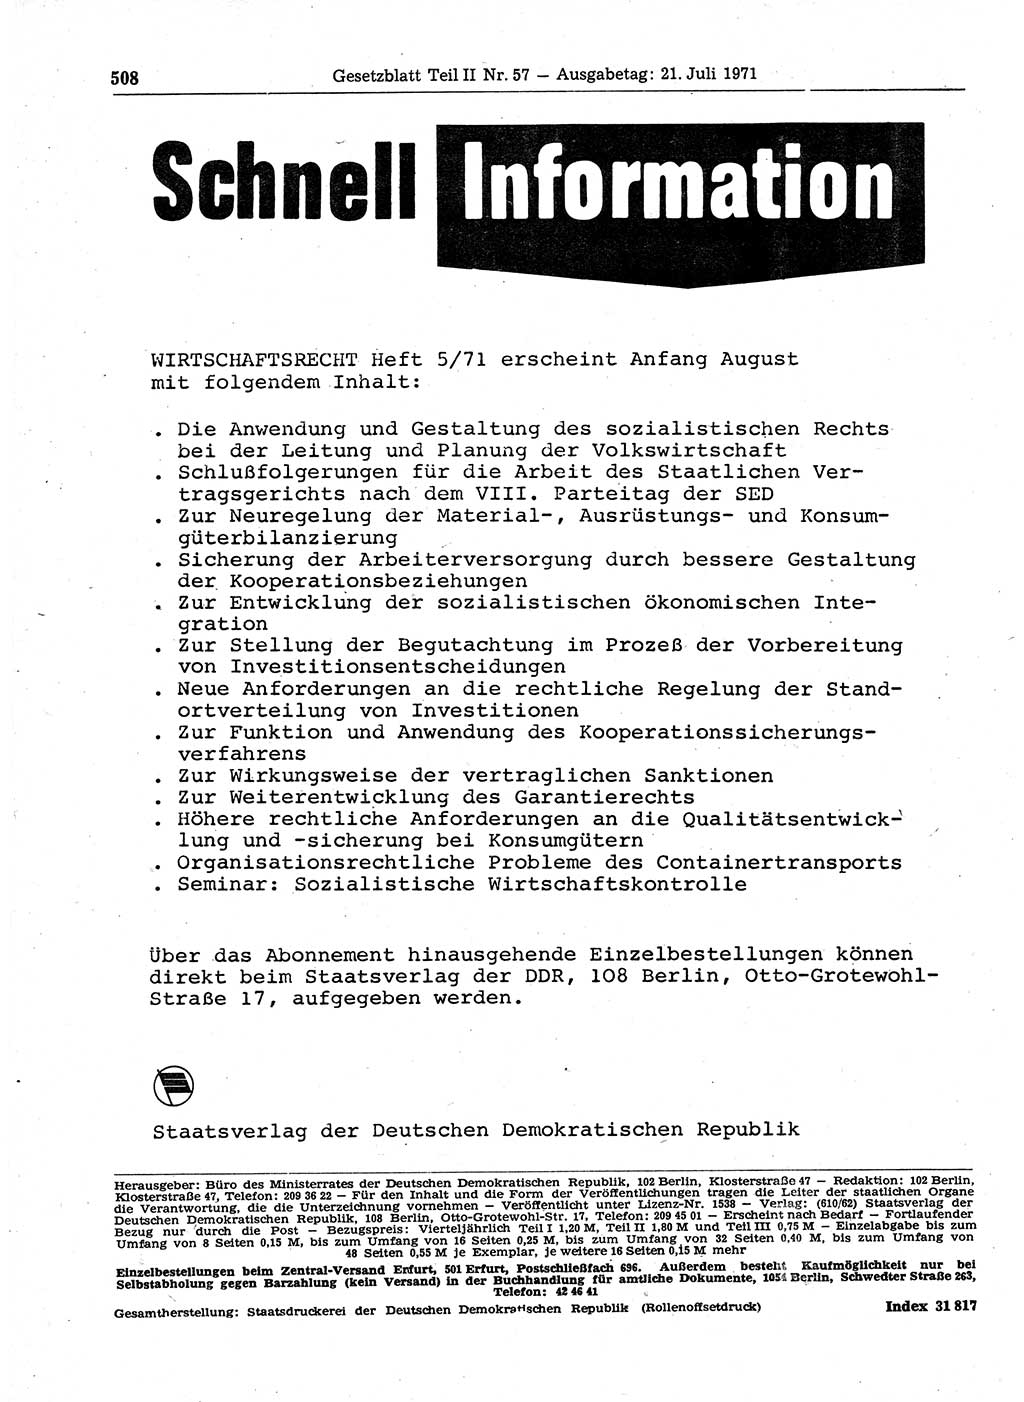 Gesetzblatt (GBl.) der Deutschen Demokratischen Republik (DDR) Teil ⅠⅠ 1971, Seite 508 (GBl. DDR ⅠⅠ 1971, S. 508)